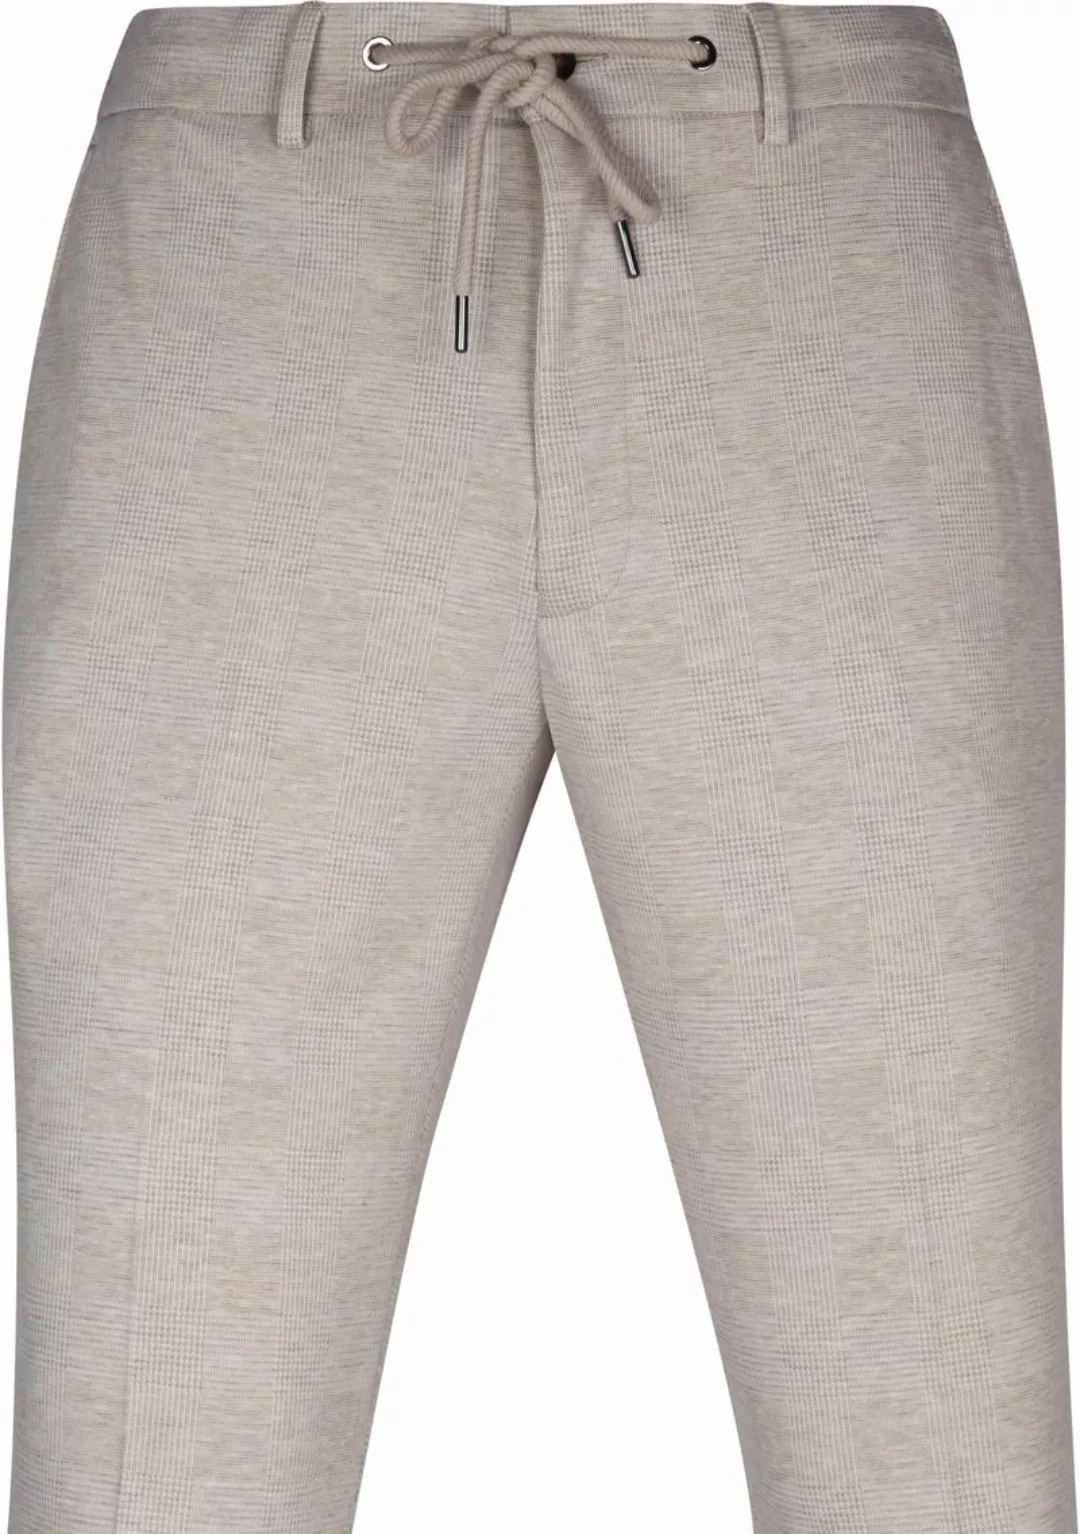 Suitable Pantalon Jersey Sand Kariert - Größe 102 günstig online kaufen